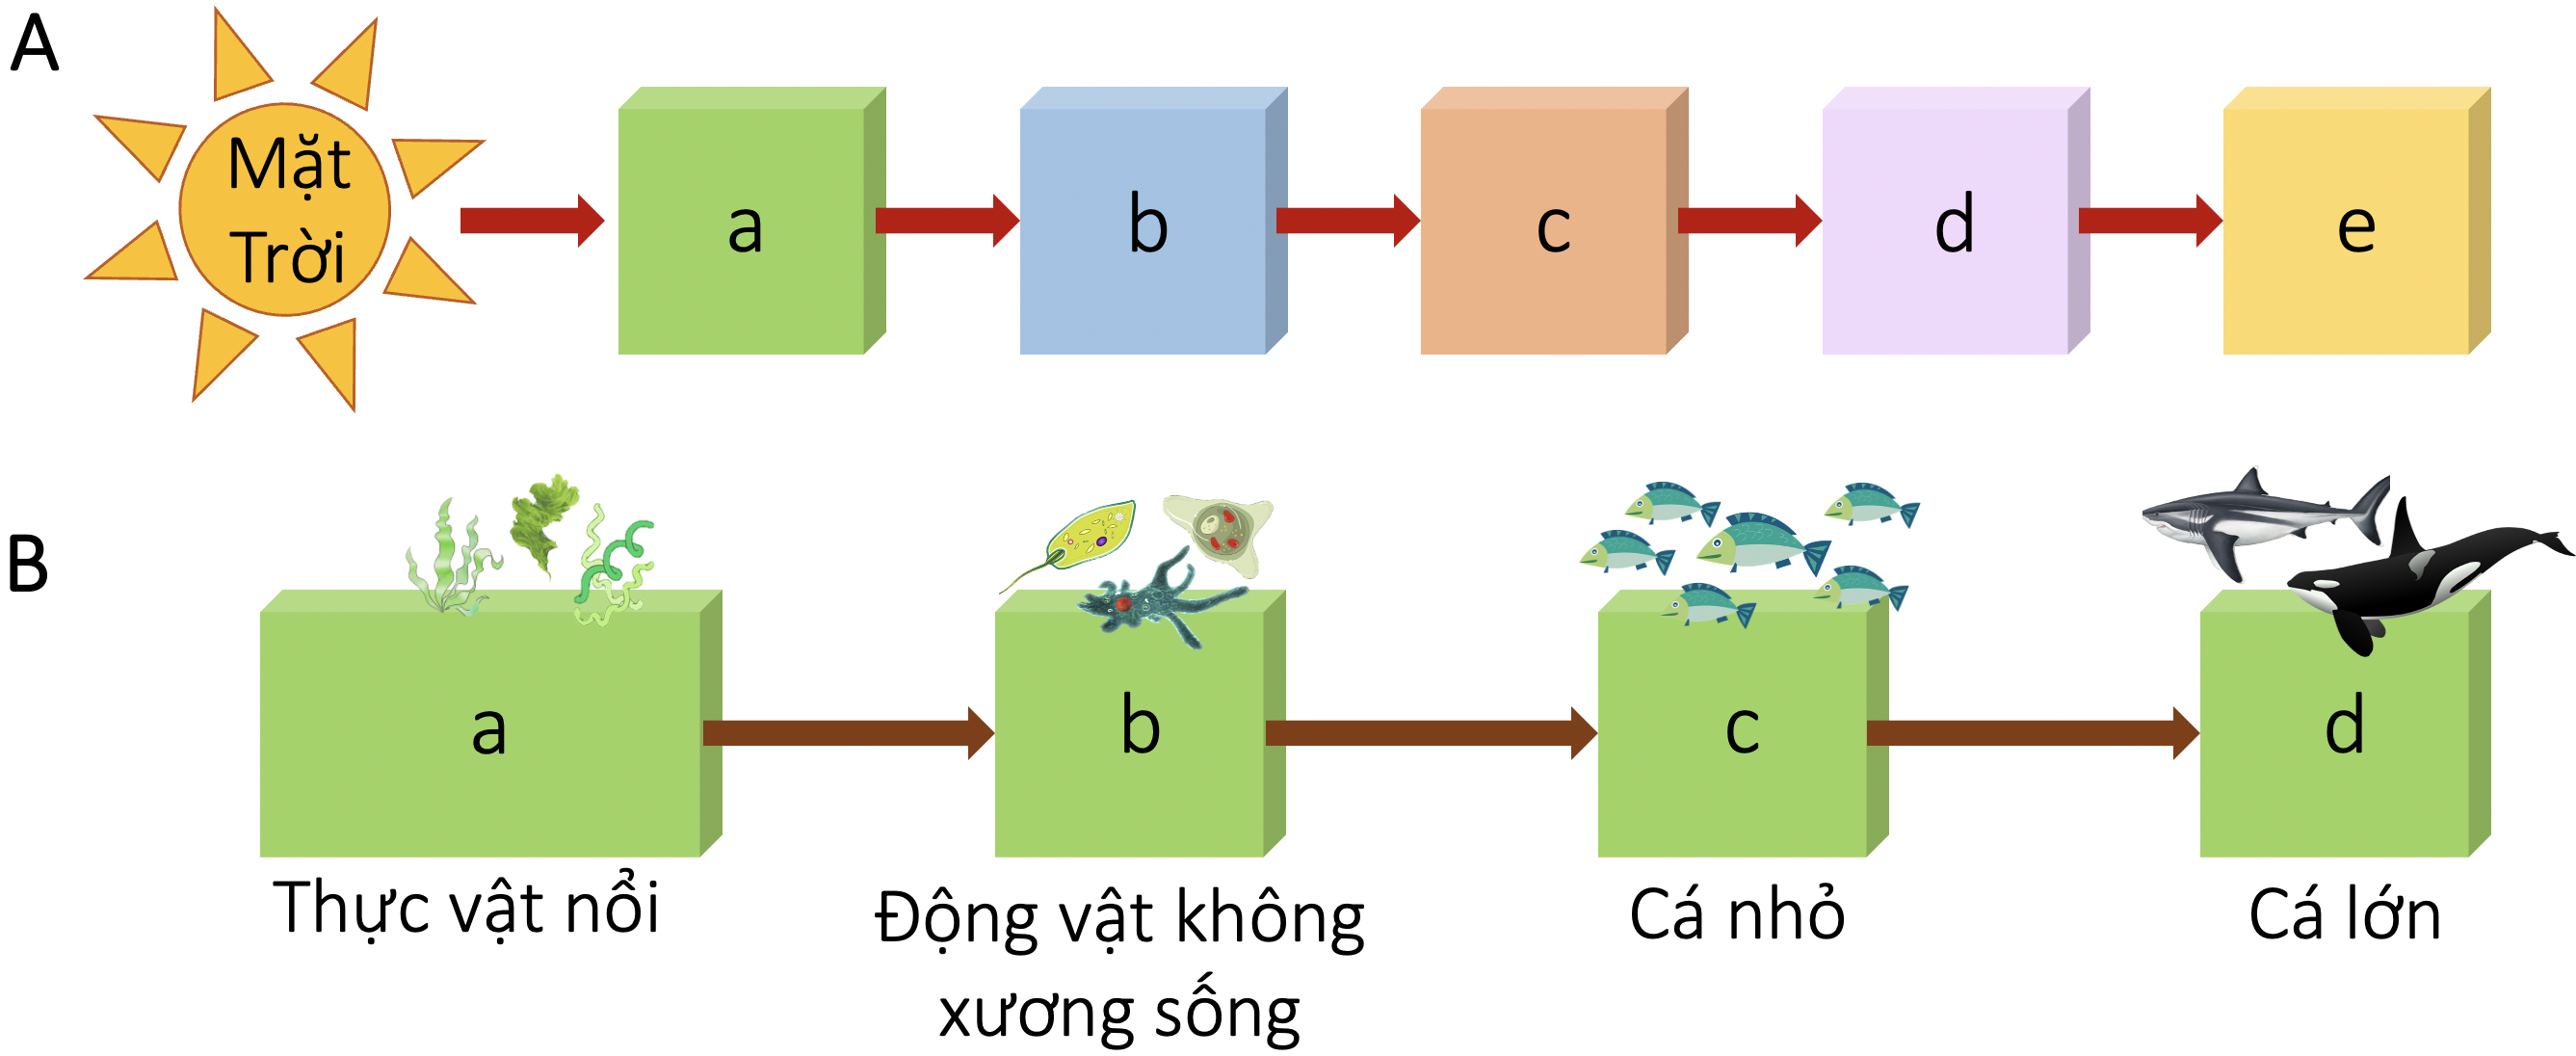 Các bậc dinh dưỡng của một quần xã sinh vật (A) và ví dụ về các bậc sinh dưỡng trong một quần xã sinh vật biển (B) olm